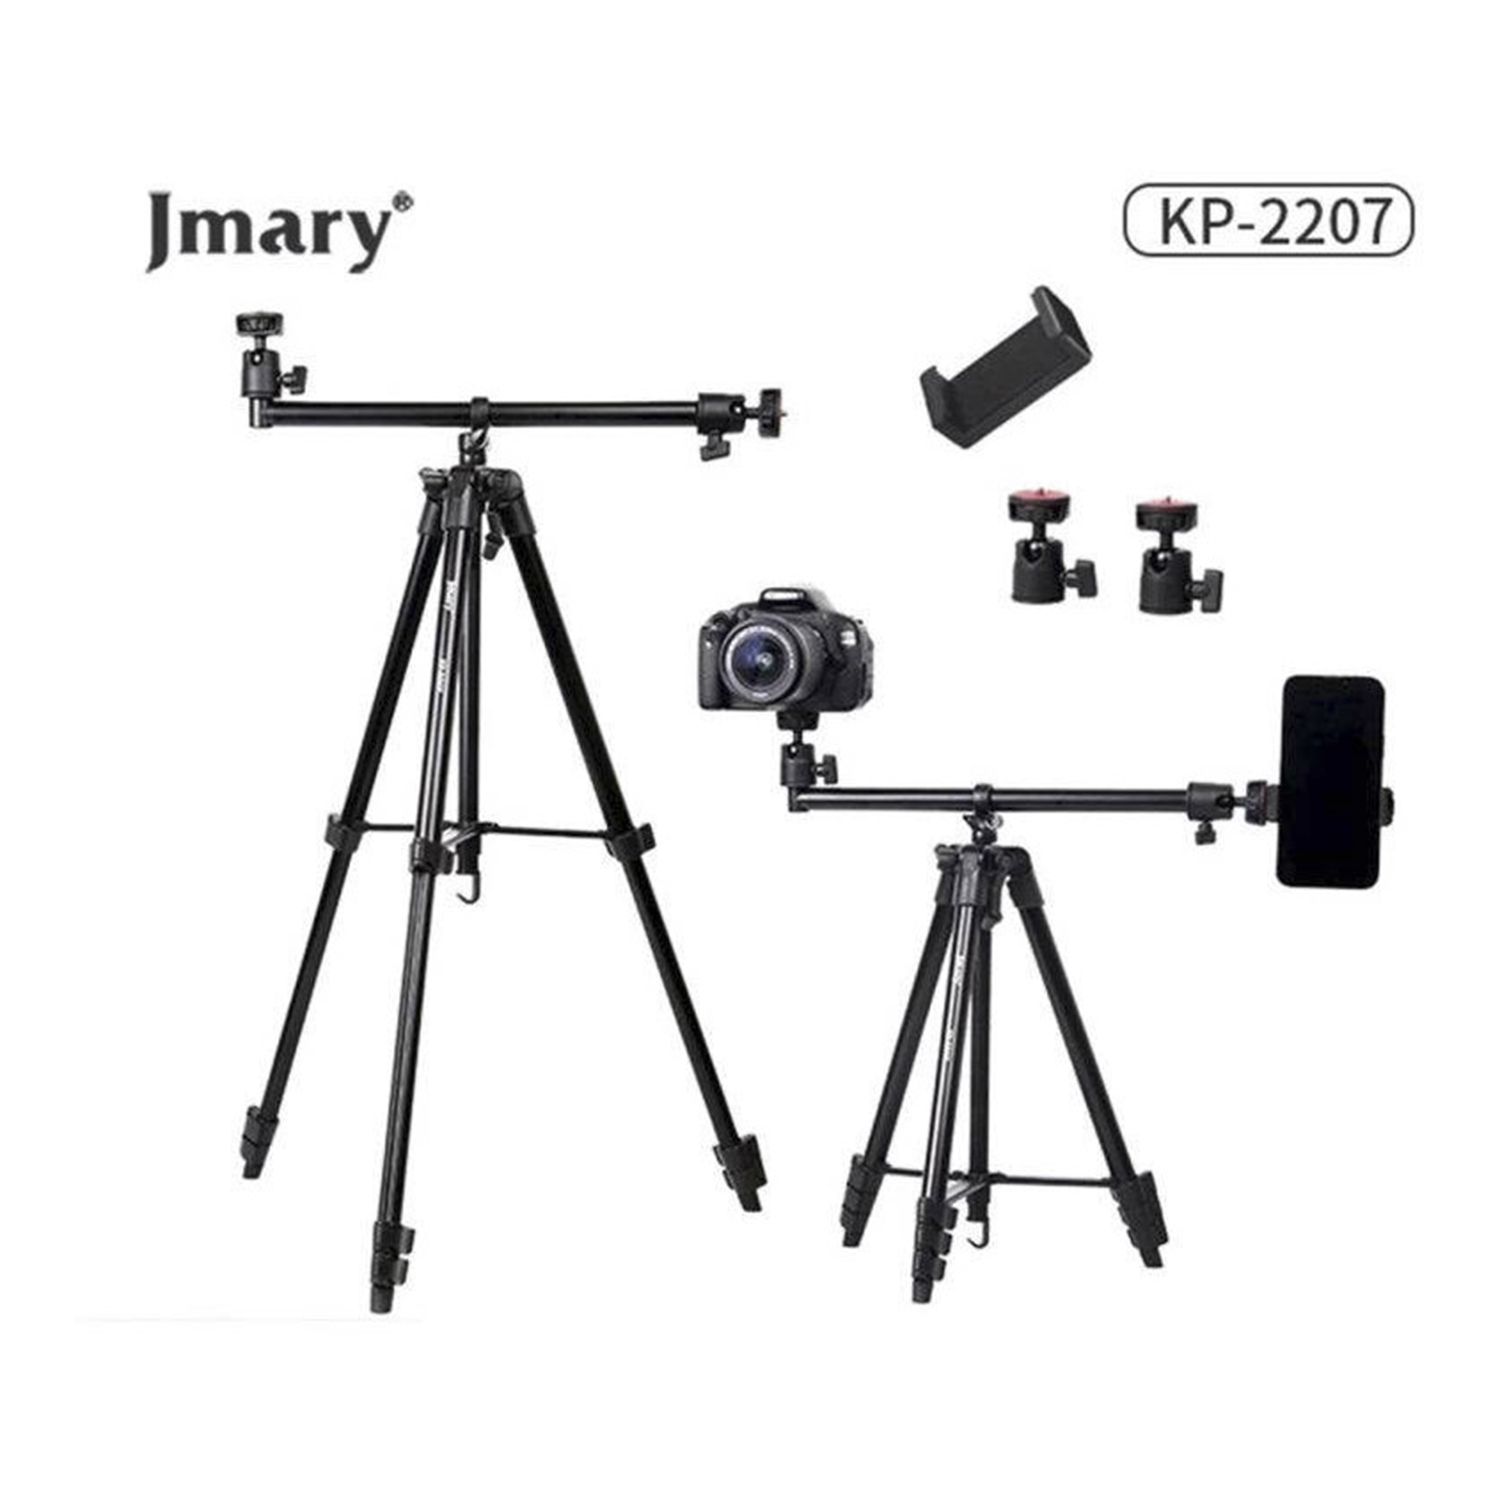 سه پایه دوربین جیماری مدل KP-2207   